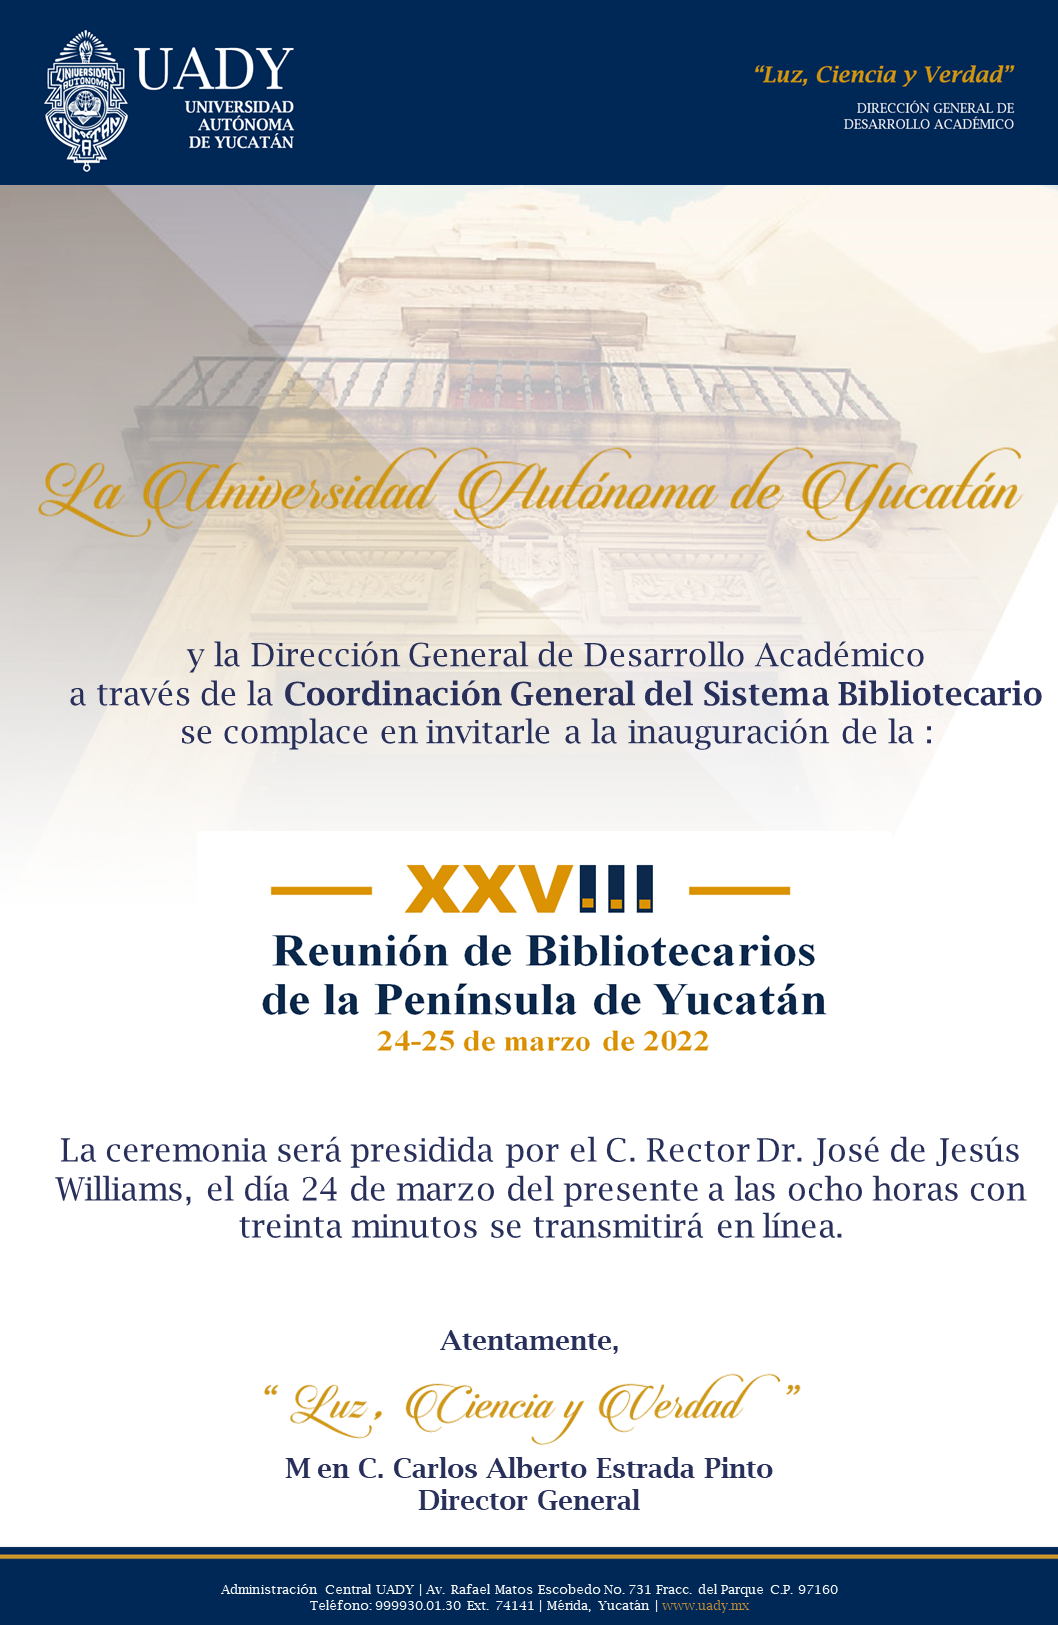 XXVIII Reunión de Bibliotecarios de la Peninsula de Yucatán